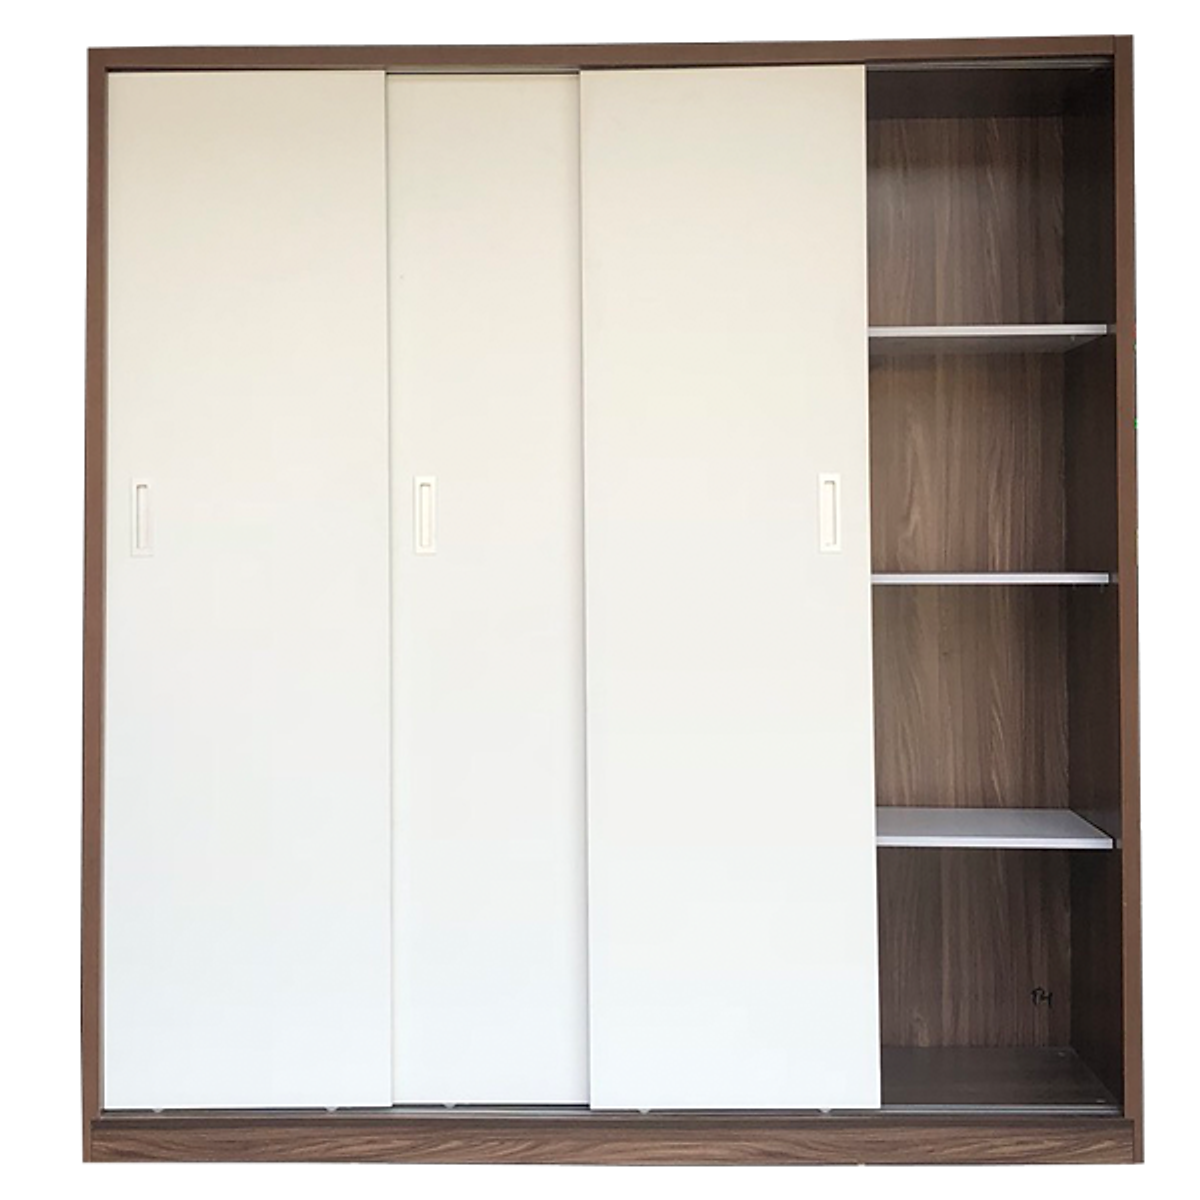 Tủ quần áo gỗ MDF Tundo cửa lùa cánh trắng 200 x 55 x 200cm